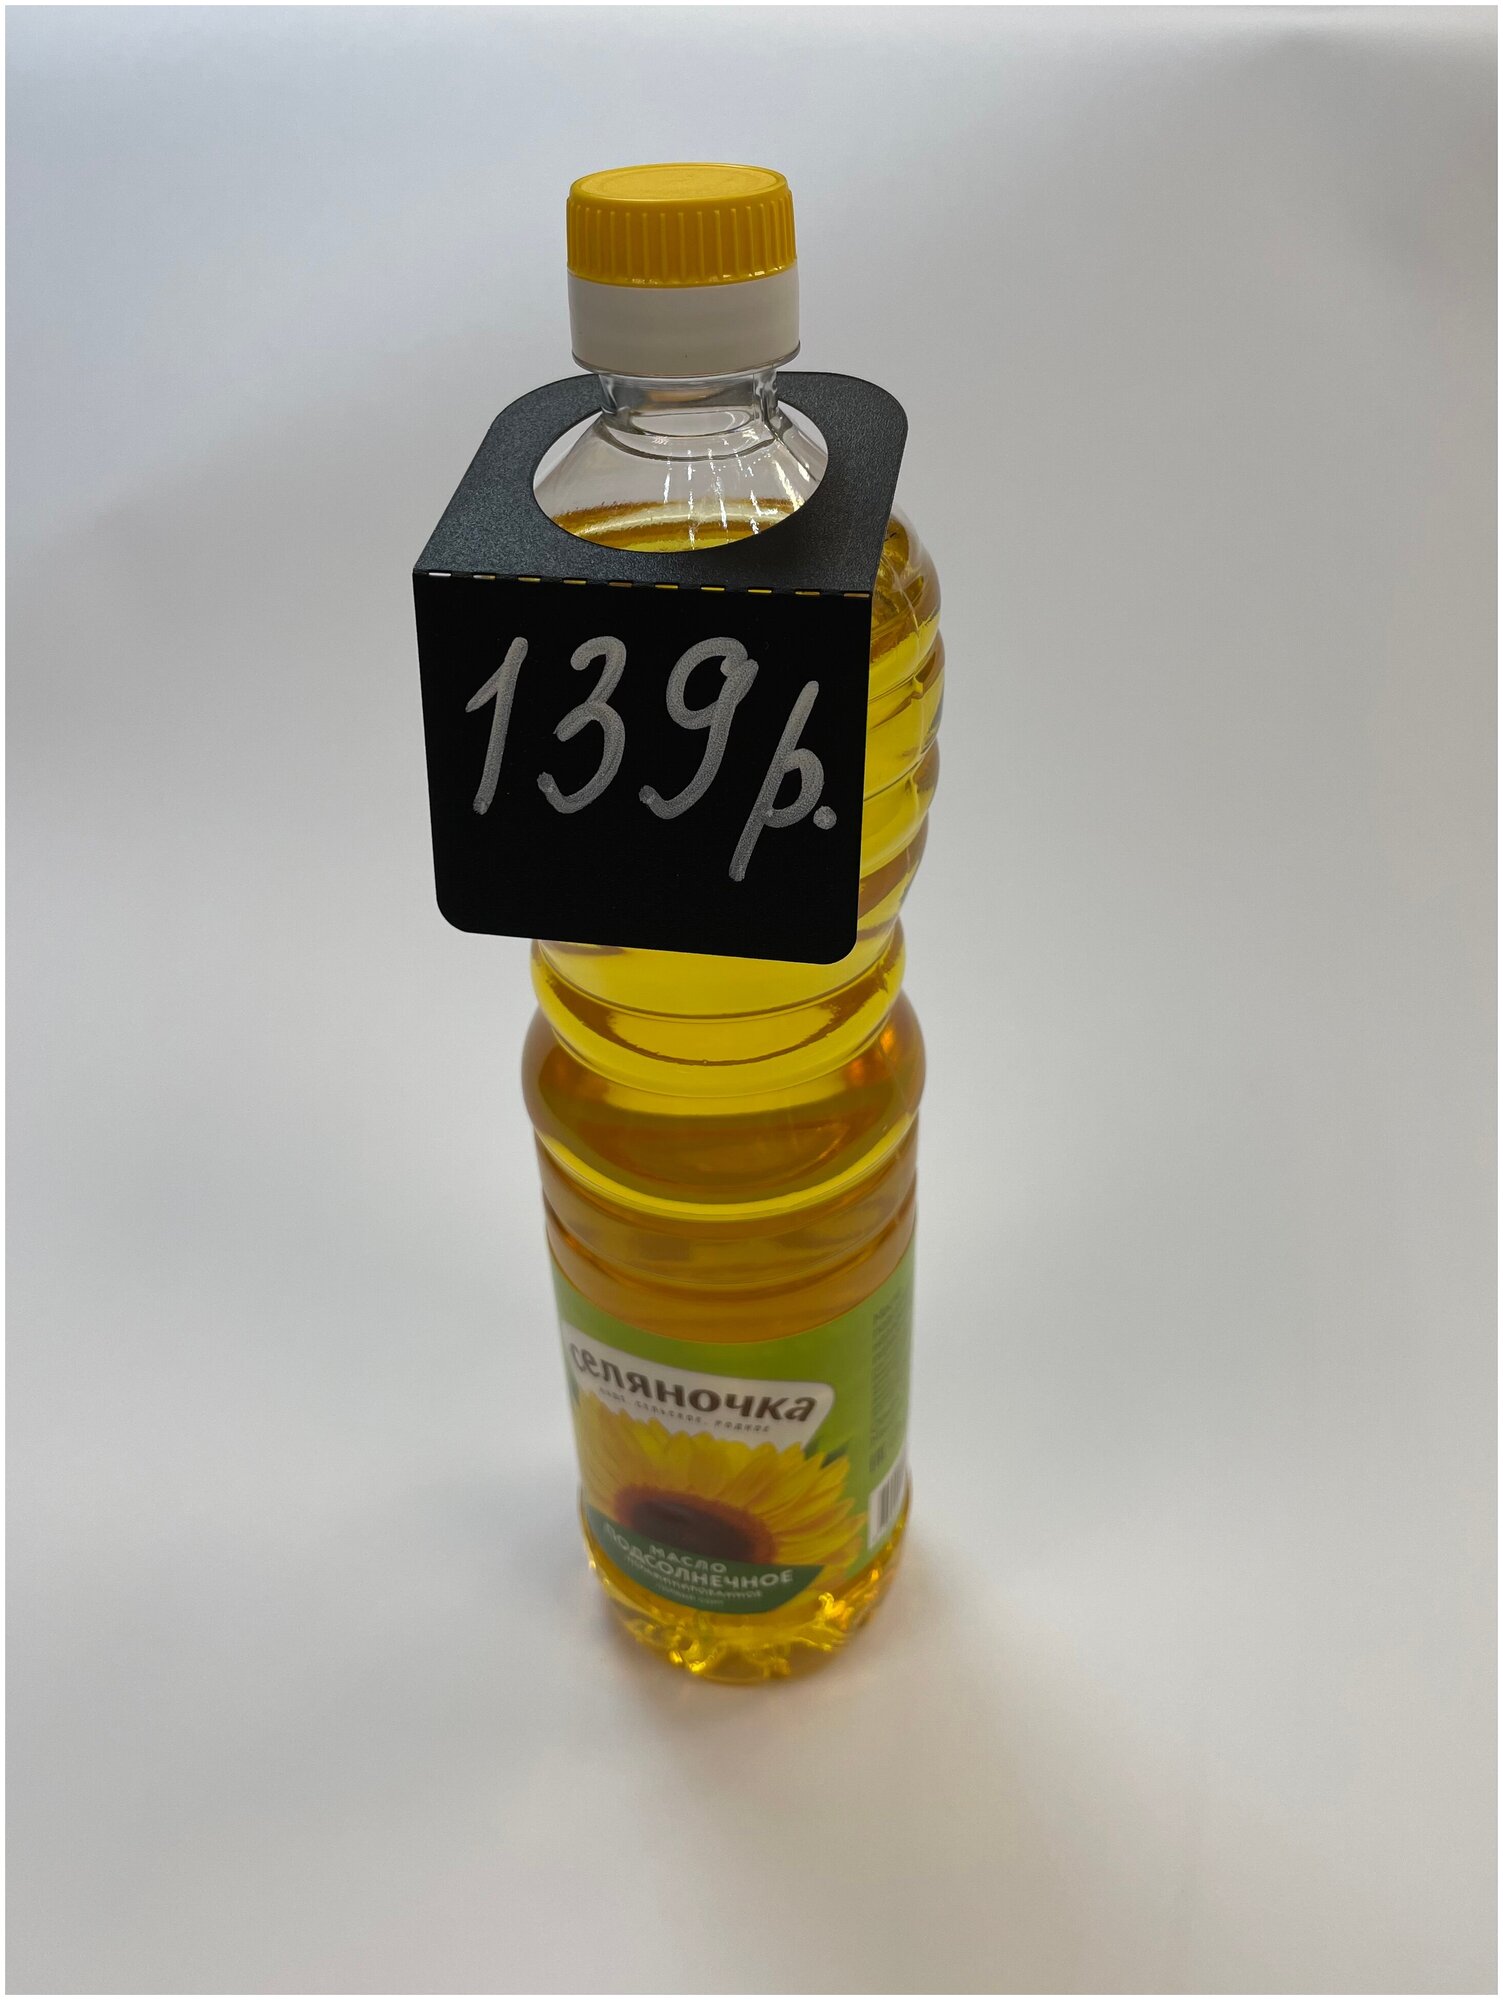 Ценник маркерный, меловой, двухсторонний, на бутылки, вешалки, подвесы, универсальный 60x100 мм, 25 шт